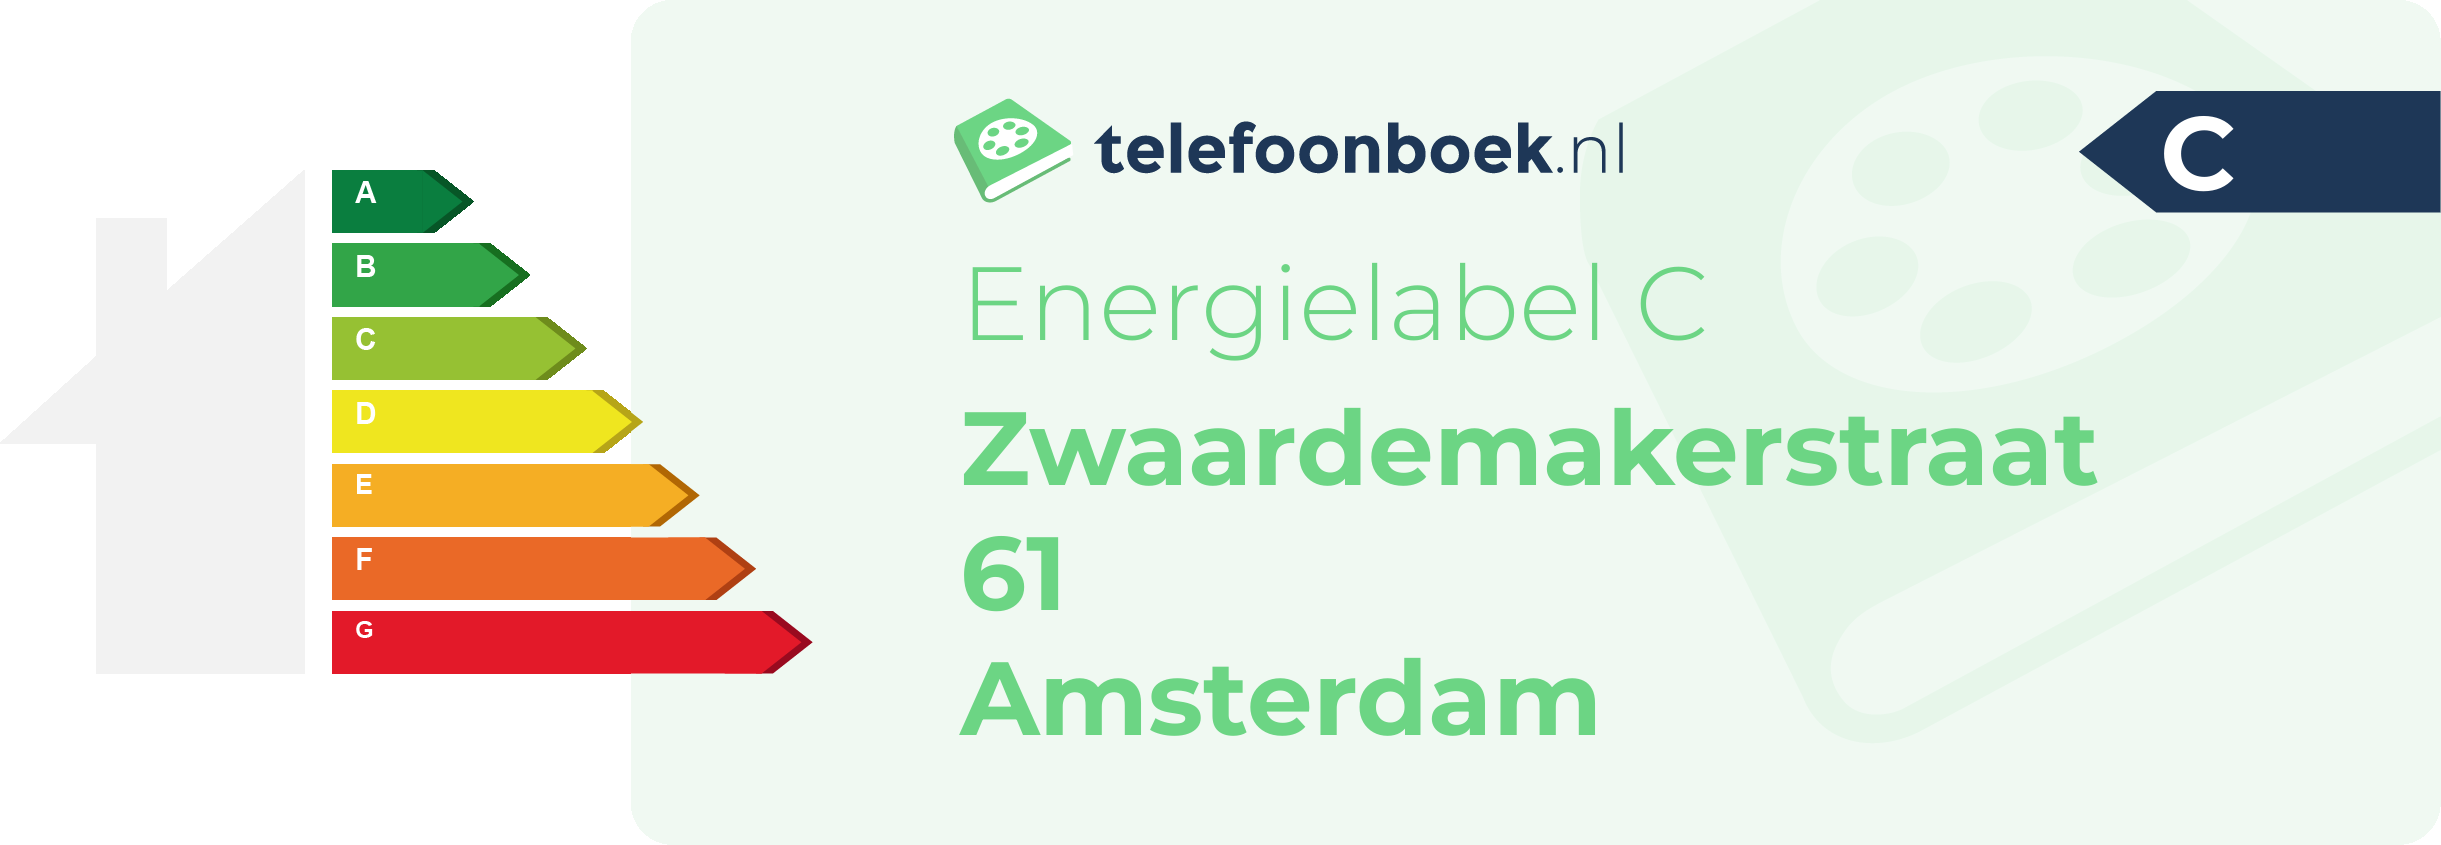 Energielabel Zwaardemakerstraat 61 Amsterdam